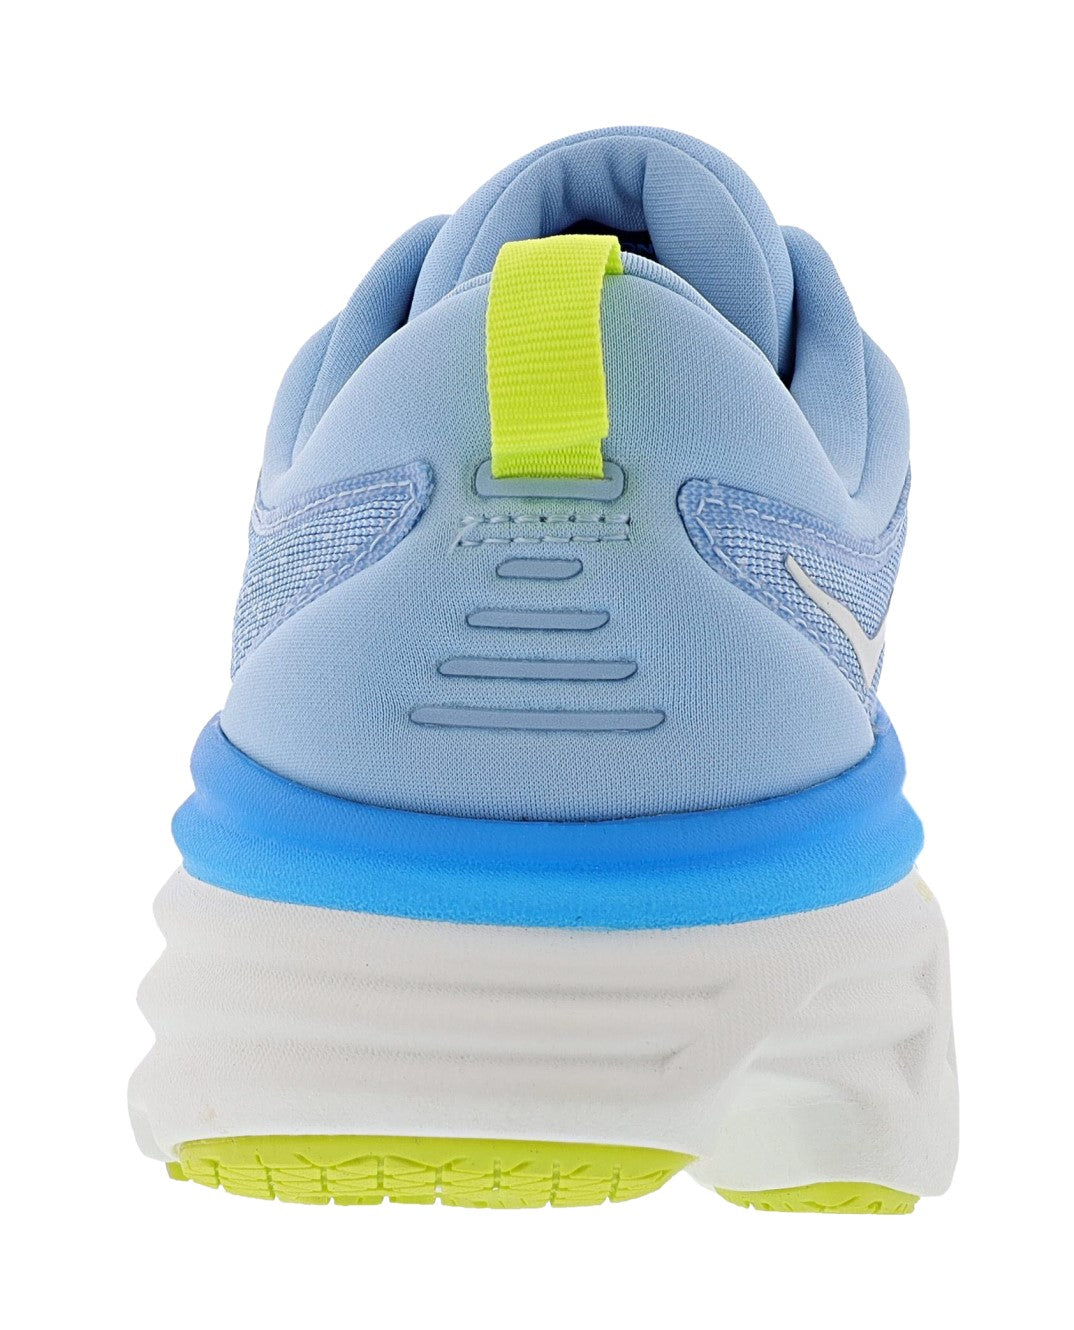 
                  
                    Back angle of Hoka Men's Bondi 8 Ultra Cushioned Walkig & Running Shoes
                  
                